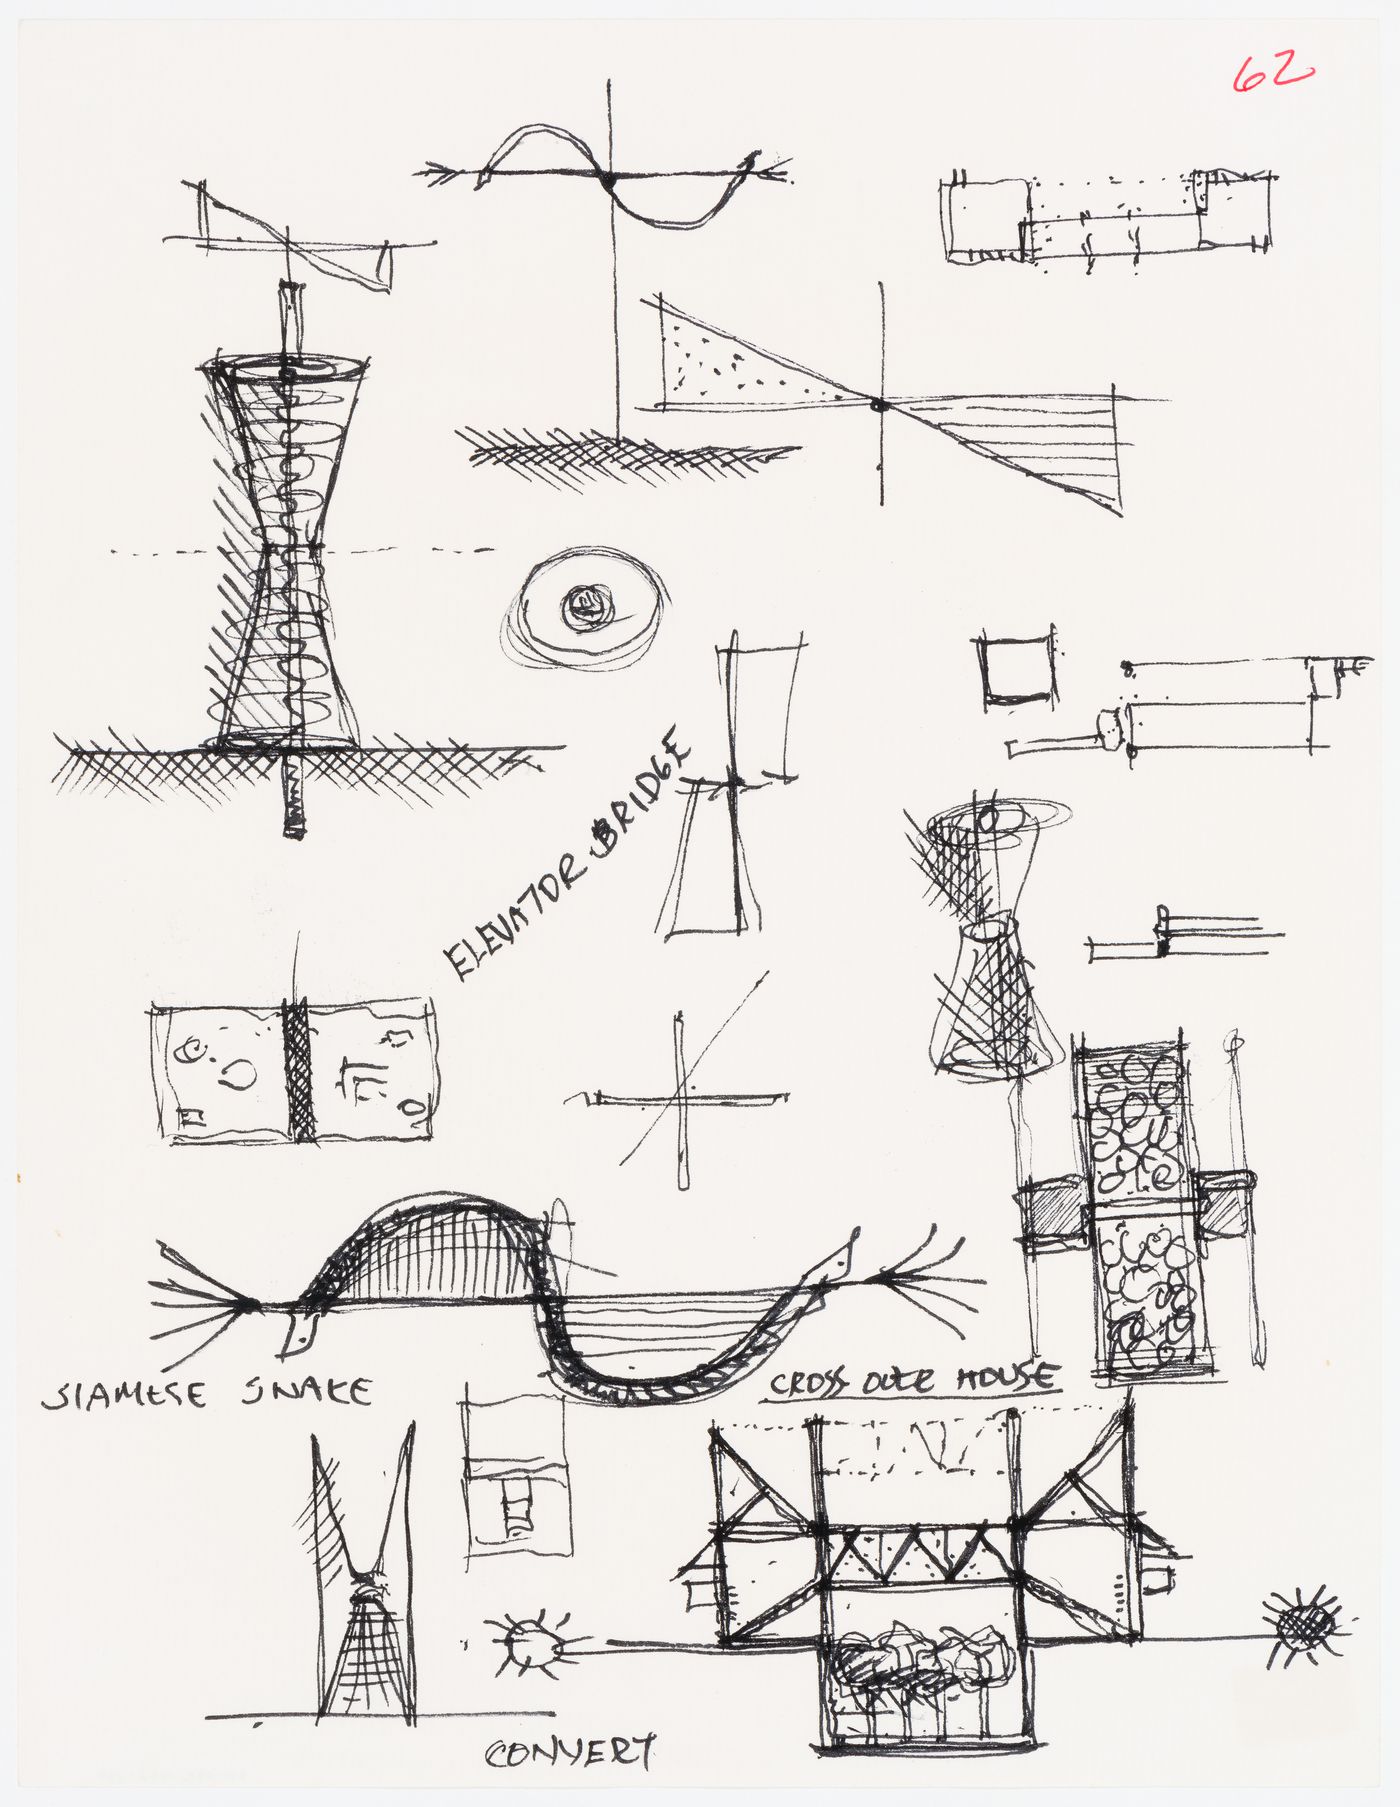 Conceptual sketches for the Lancaster/Hanover Masque